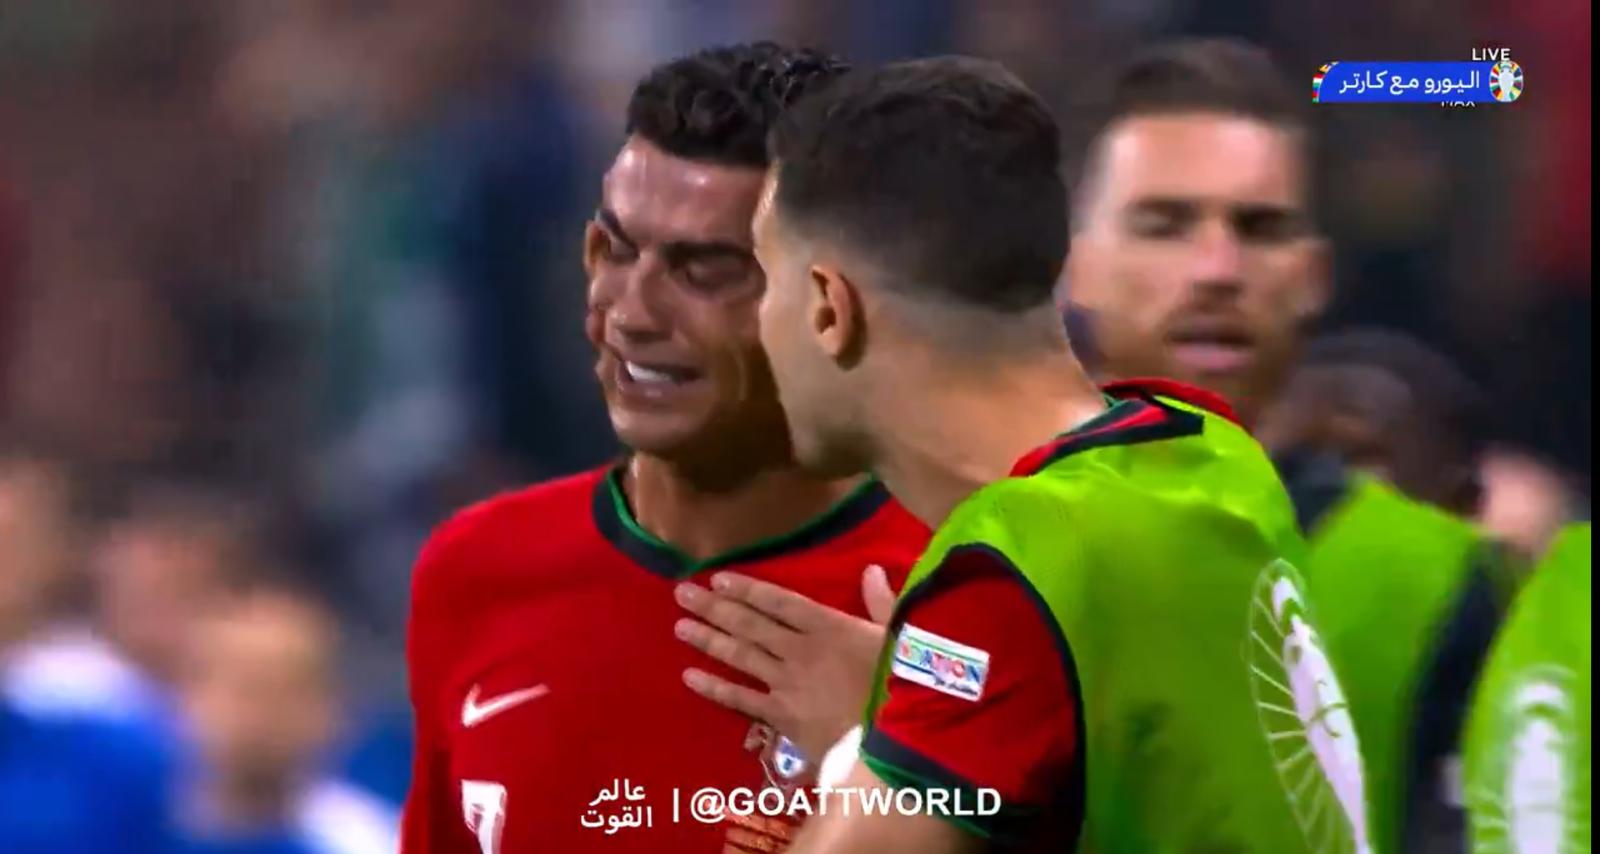 Portogallo Slovenia, Ronaldo SBAGLIA il rigore e PIANGE DISPERATO in campo – VIDEO